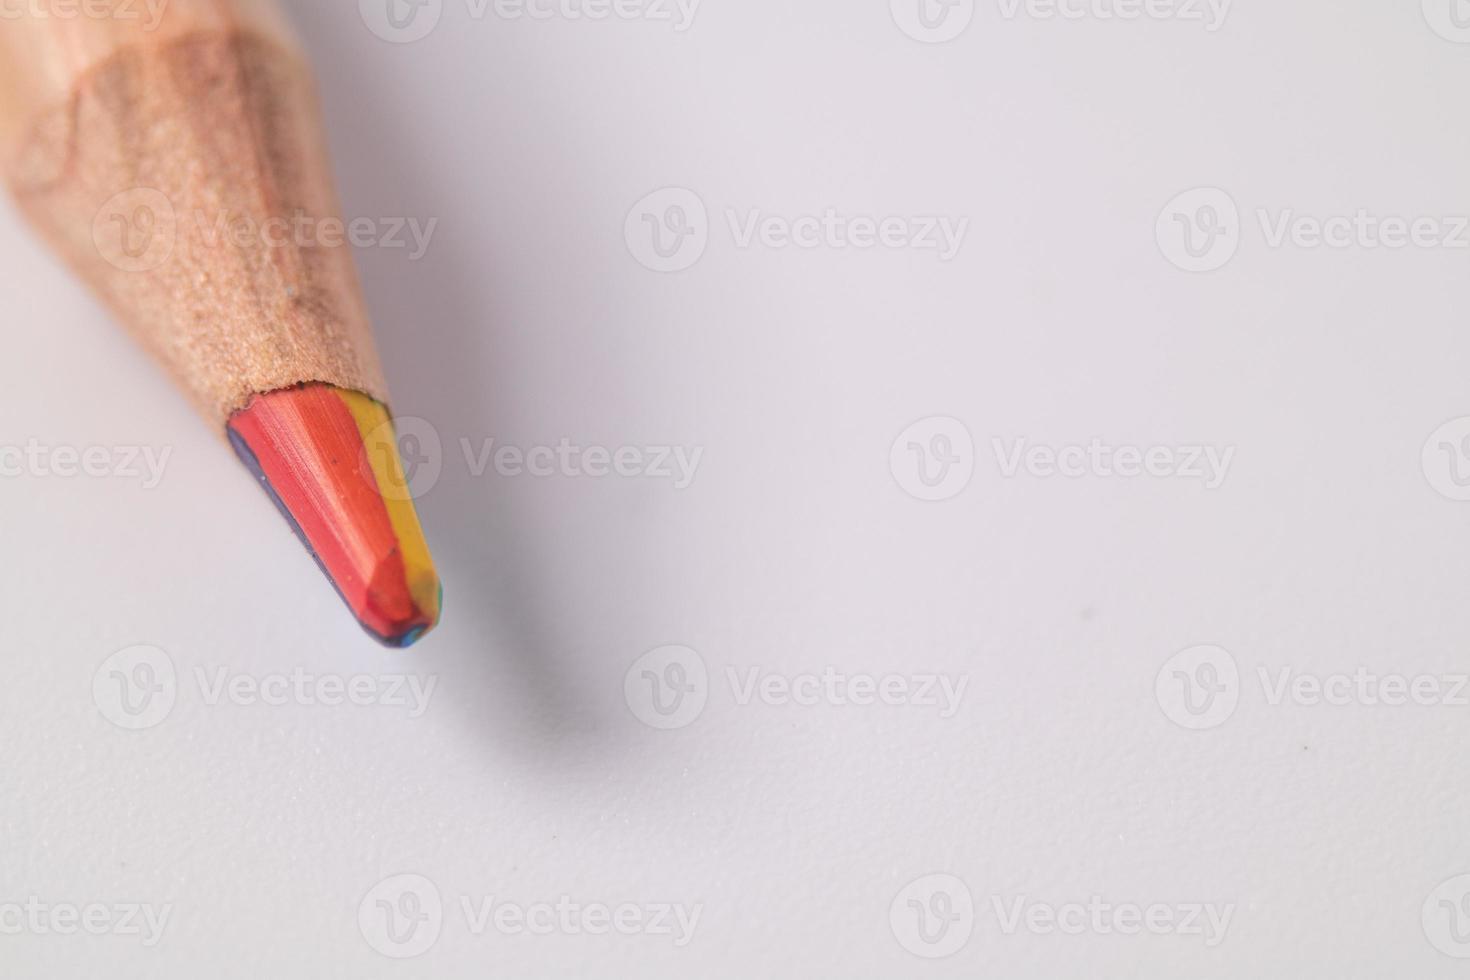 1 farbiger Bleistift auf einem weißen Hintergrundkopienraum foto